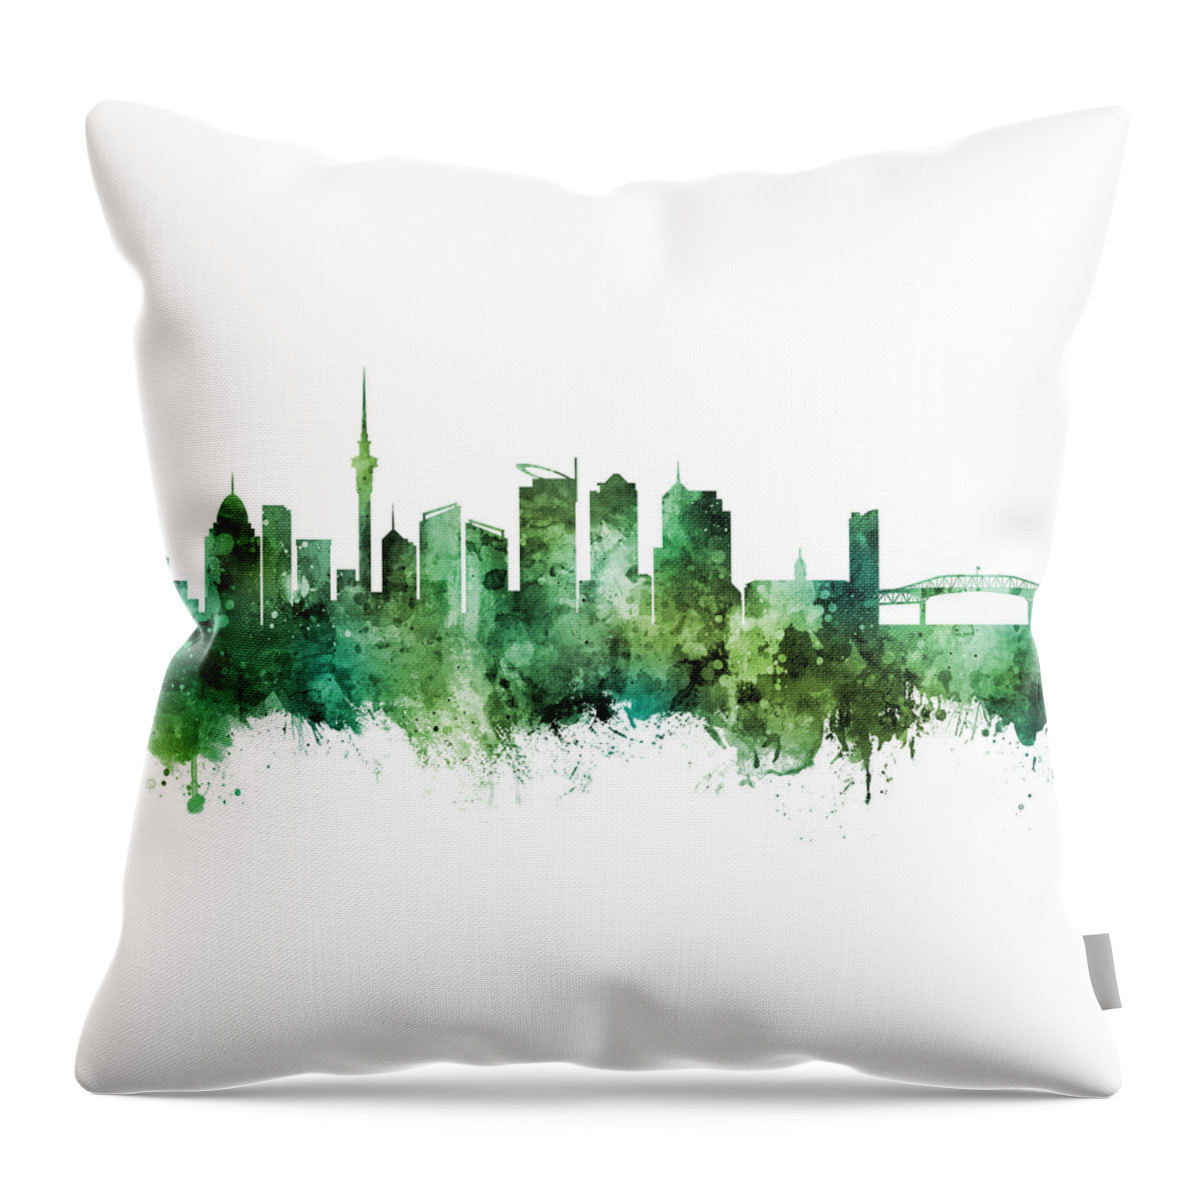 Auckland Throw Pillow featuring the digital art Auckland New Zealand Skyline #38 by Michael Tompsett